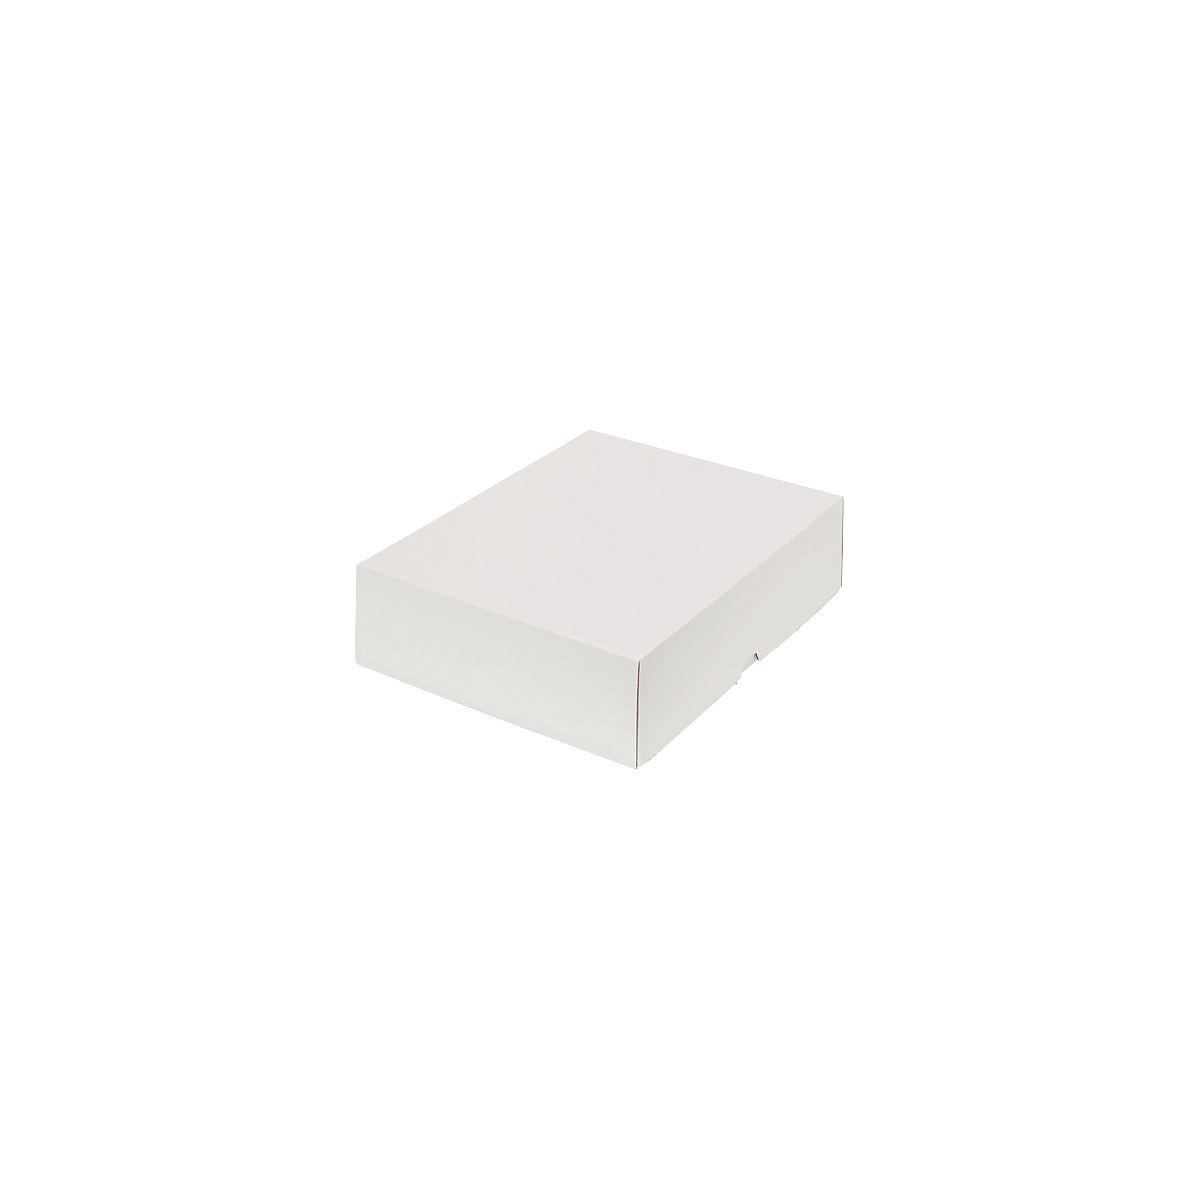 Stülpdeckelkarton, zweiteilig, Innenmaße 320 x 240 x 80 mm, A4+, weiß, ab 200 Stk-15